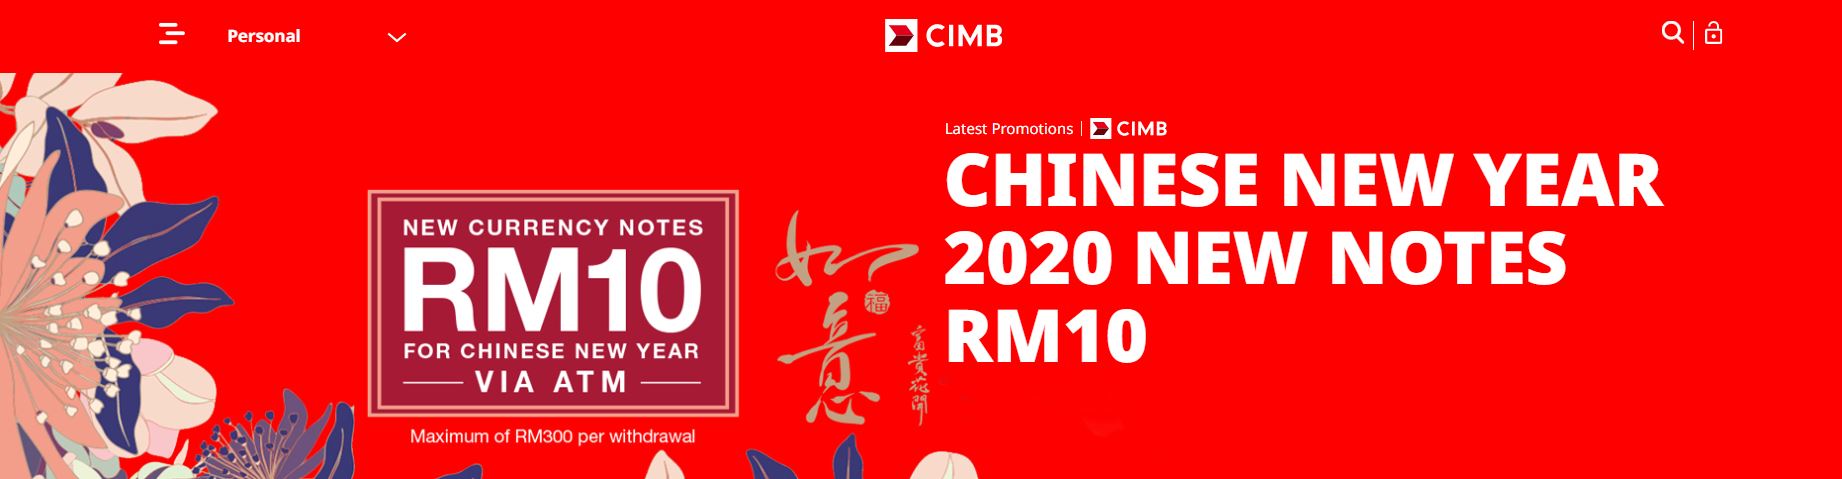 cimb-new rm10 notes-1